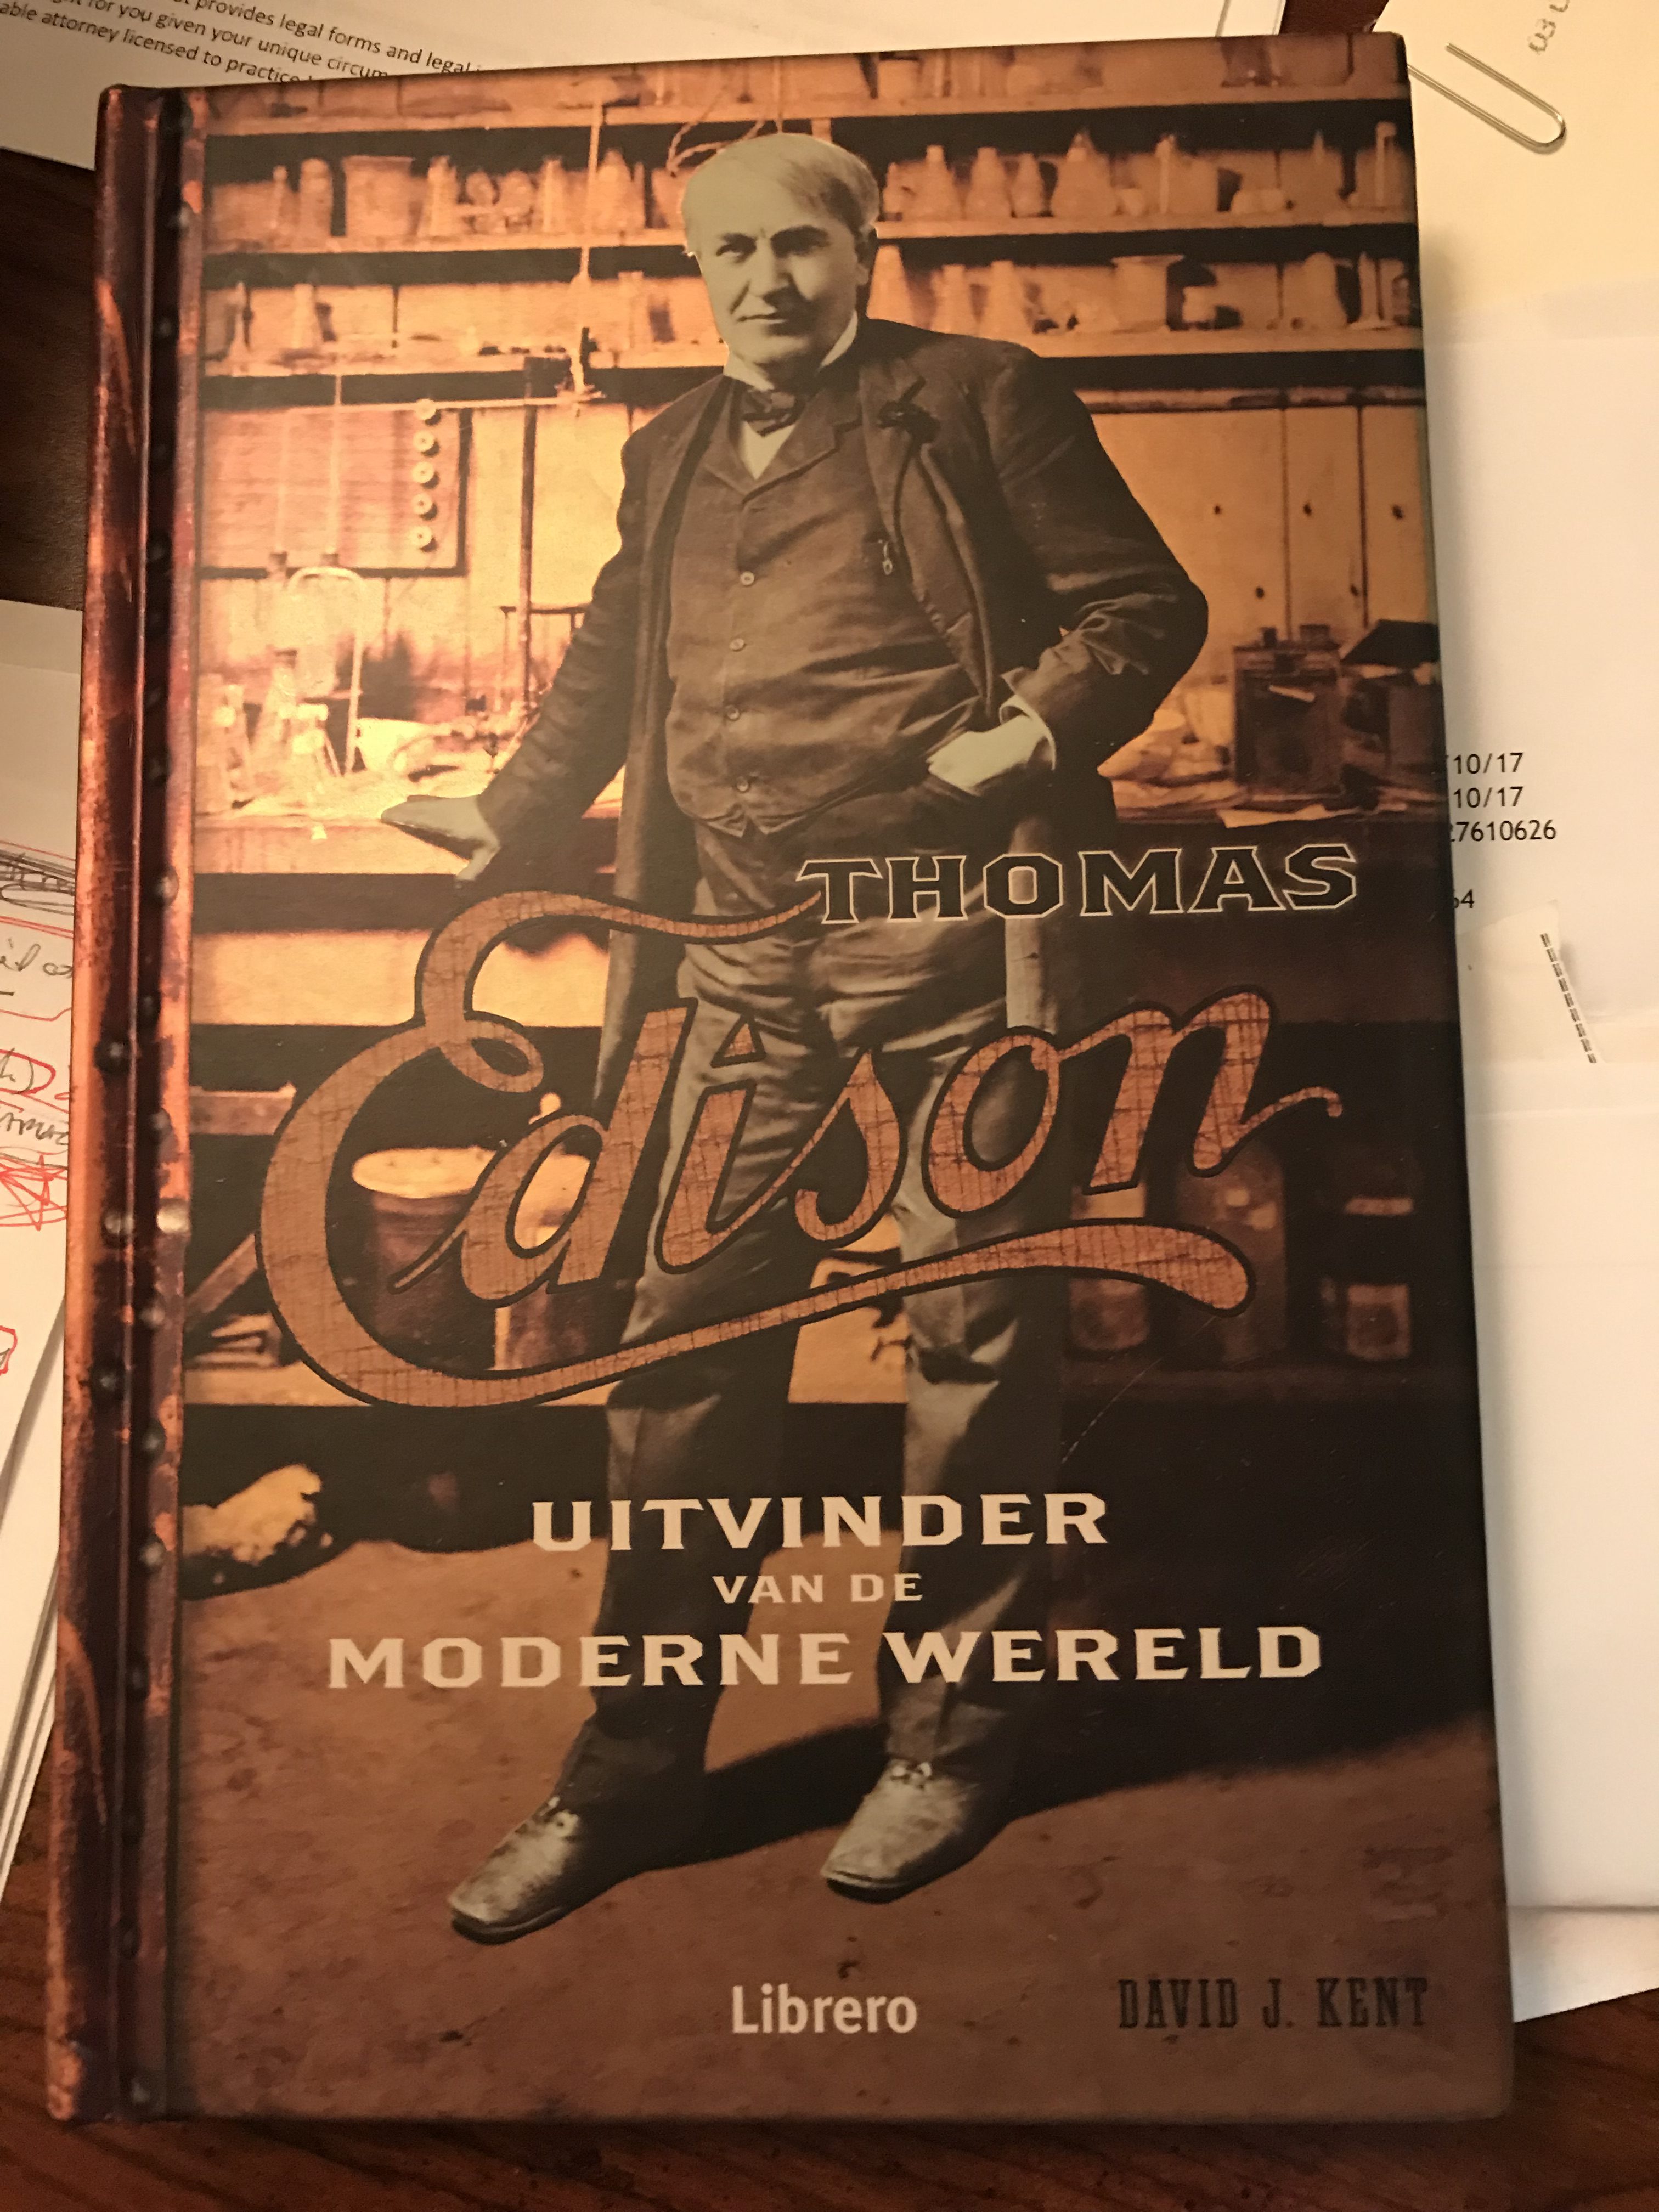 Edison Dutch version